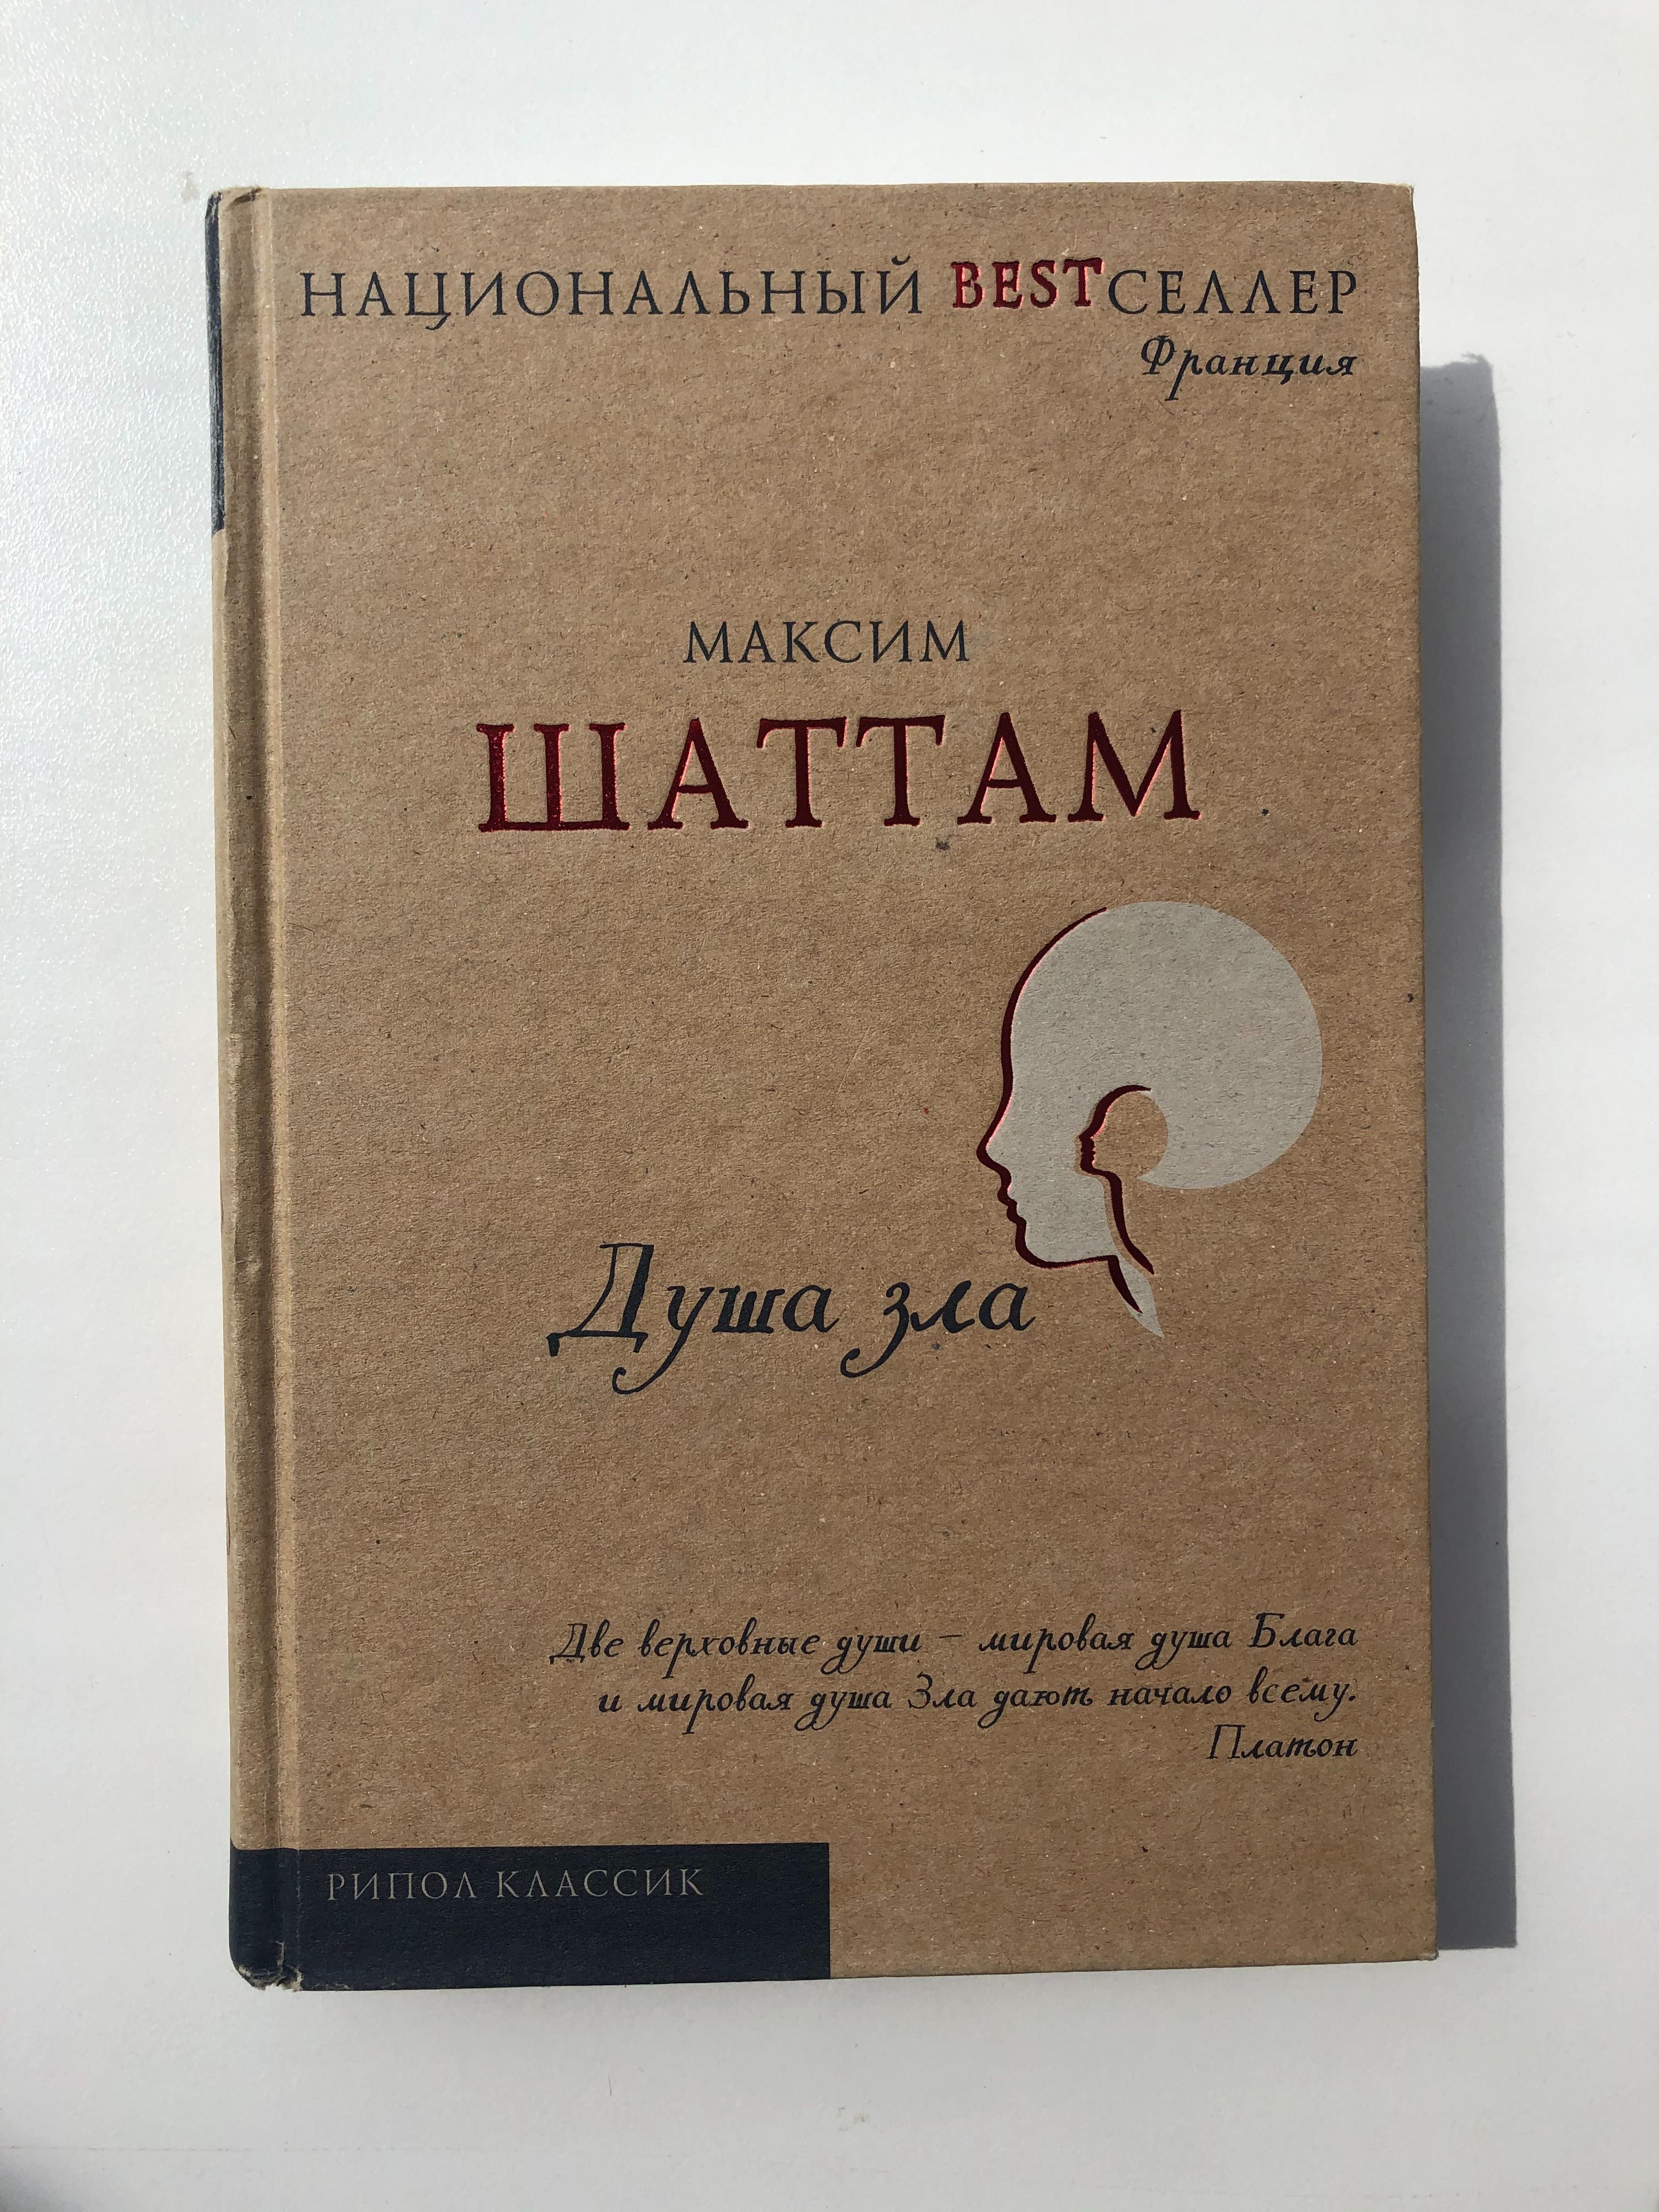 Книга Максим Шаттам «Душа зла»